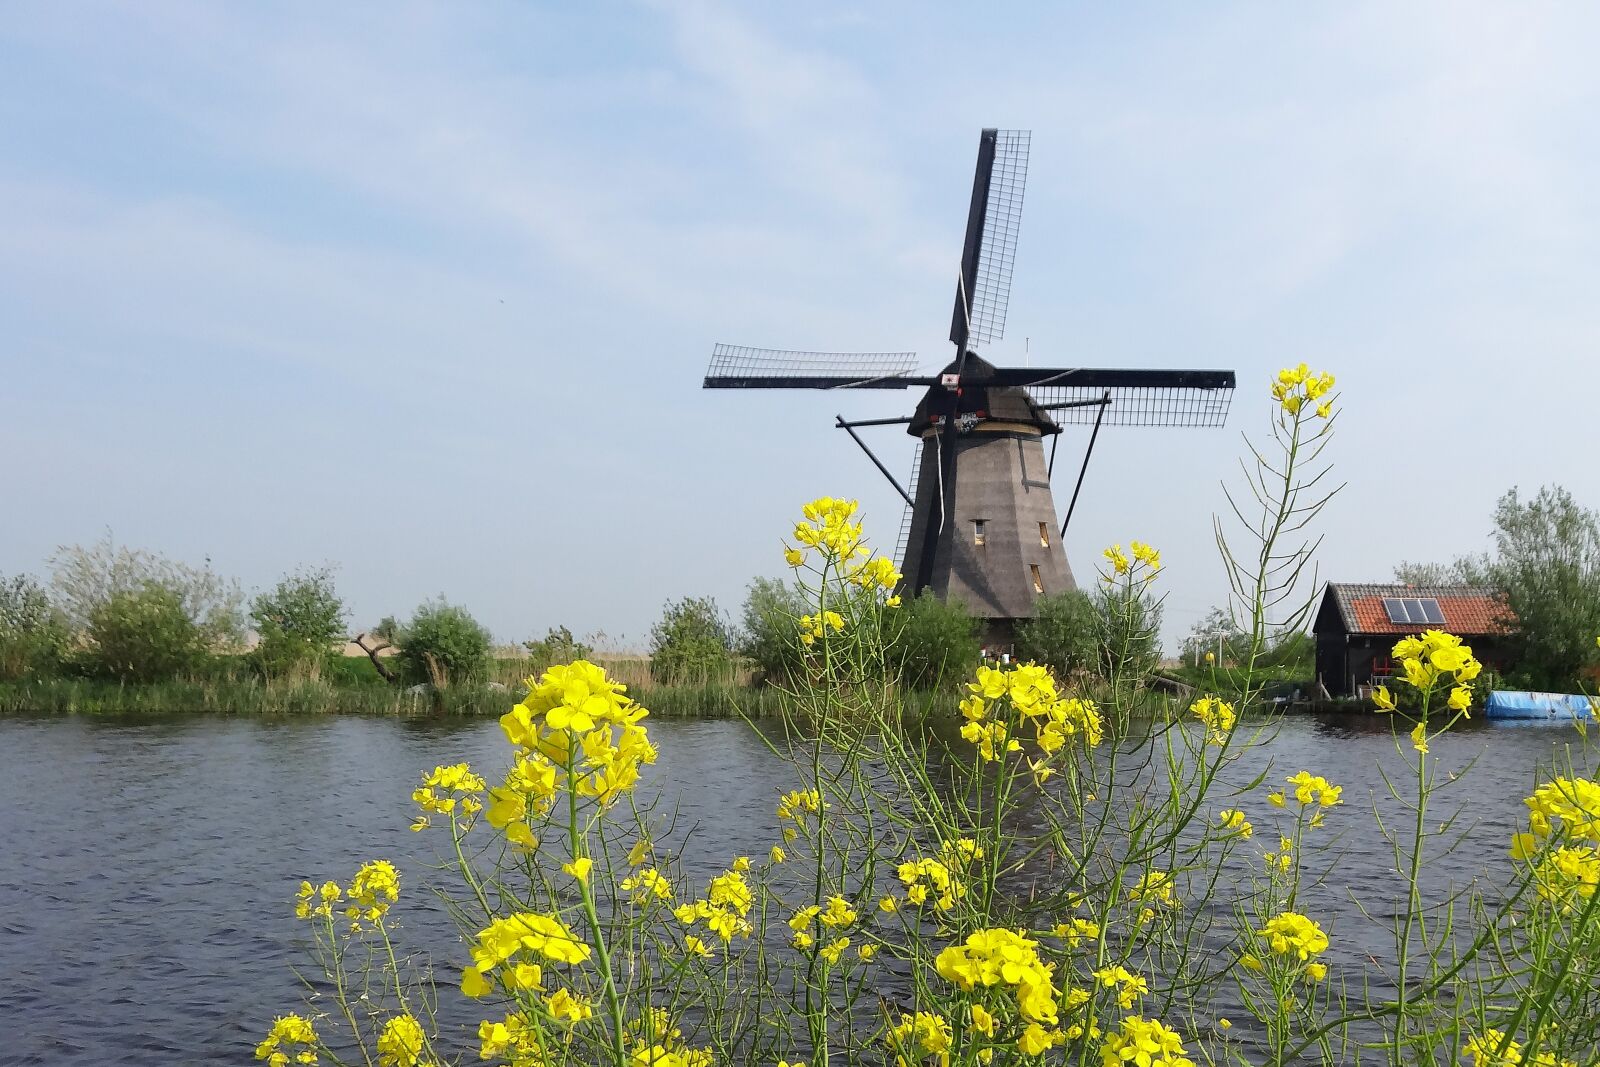 Sony Cyber-shot DSC-HX20V sample photo. Windmill, nature, landscape photography